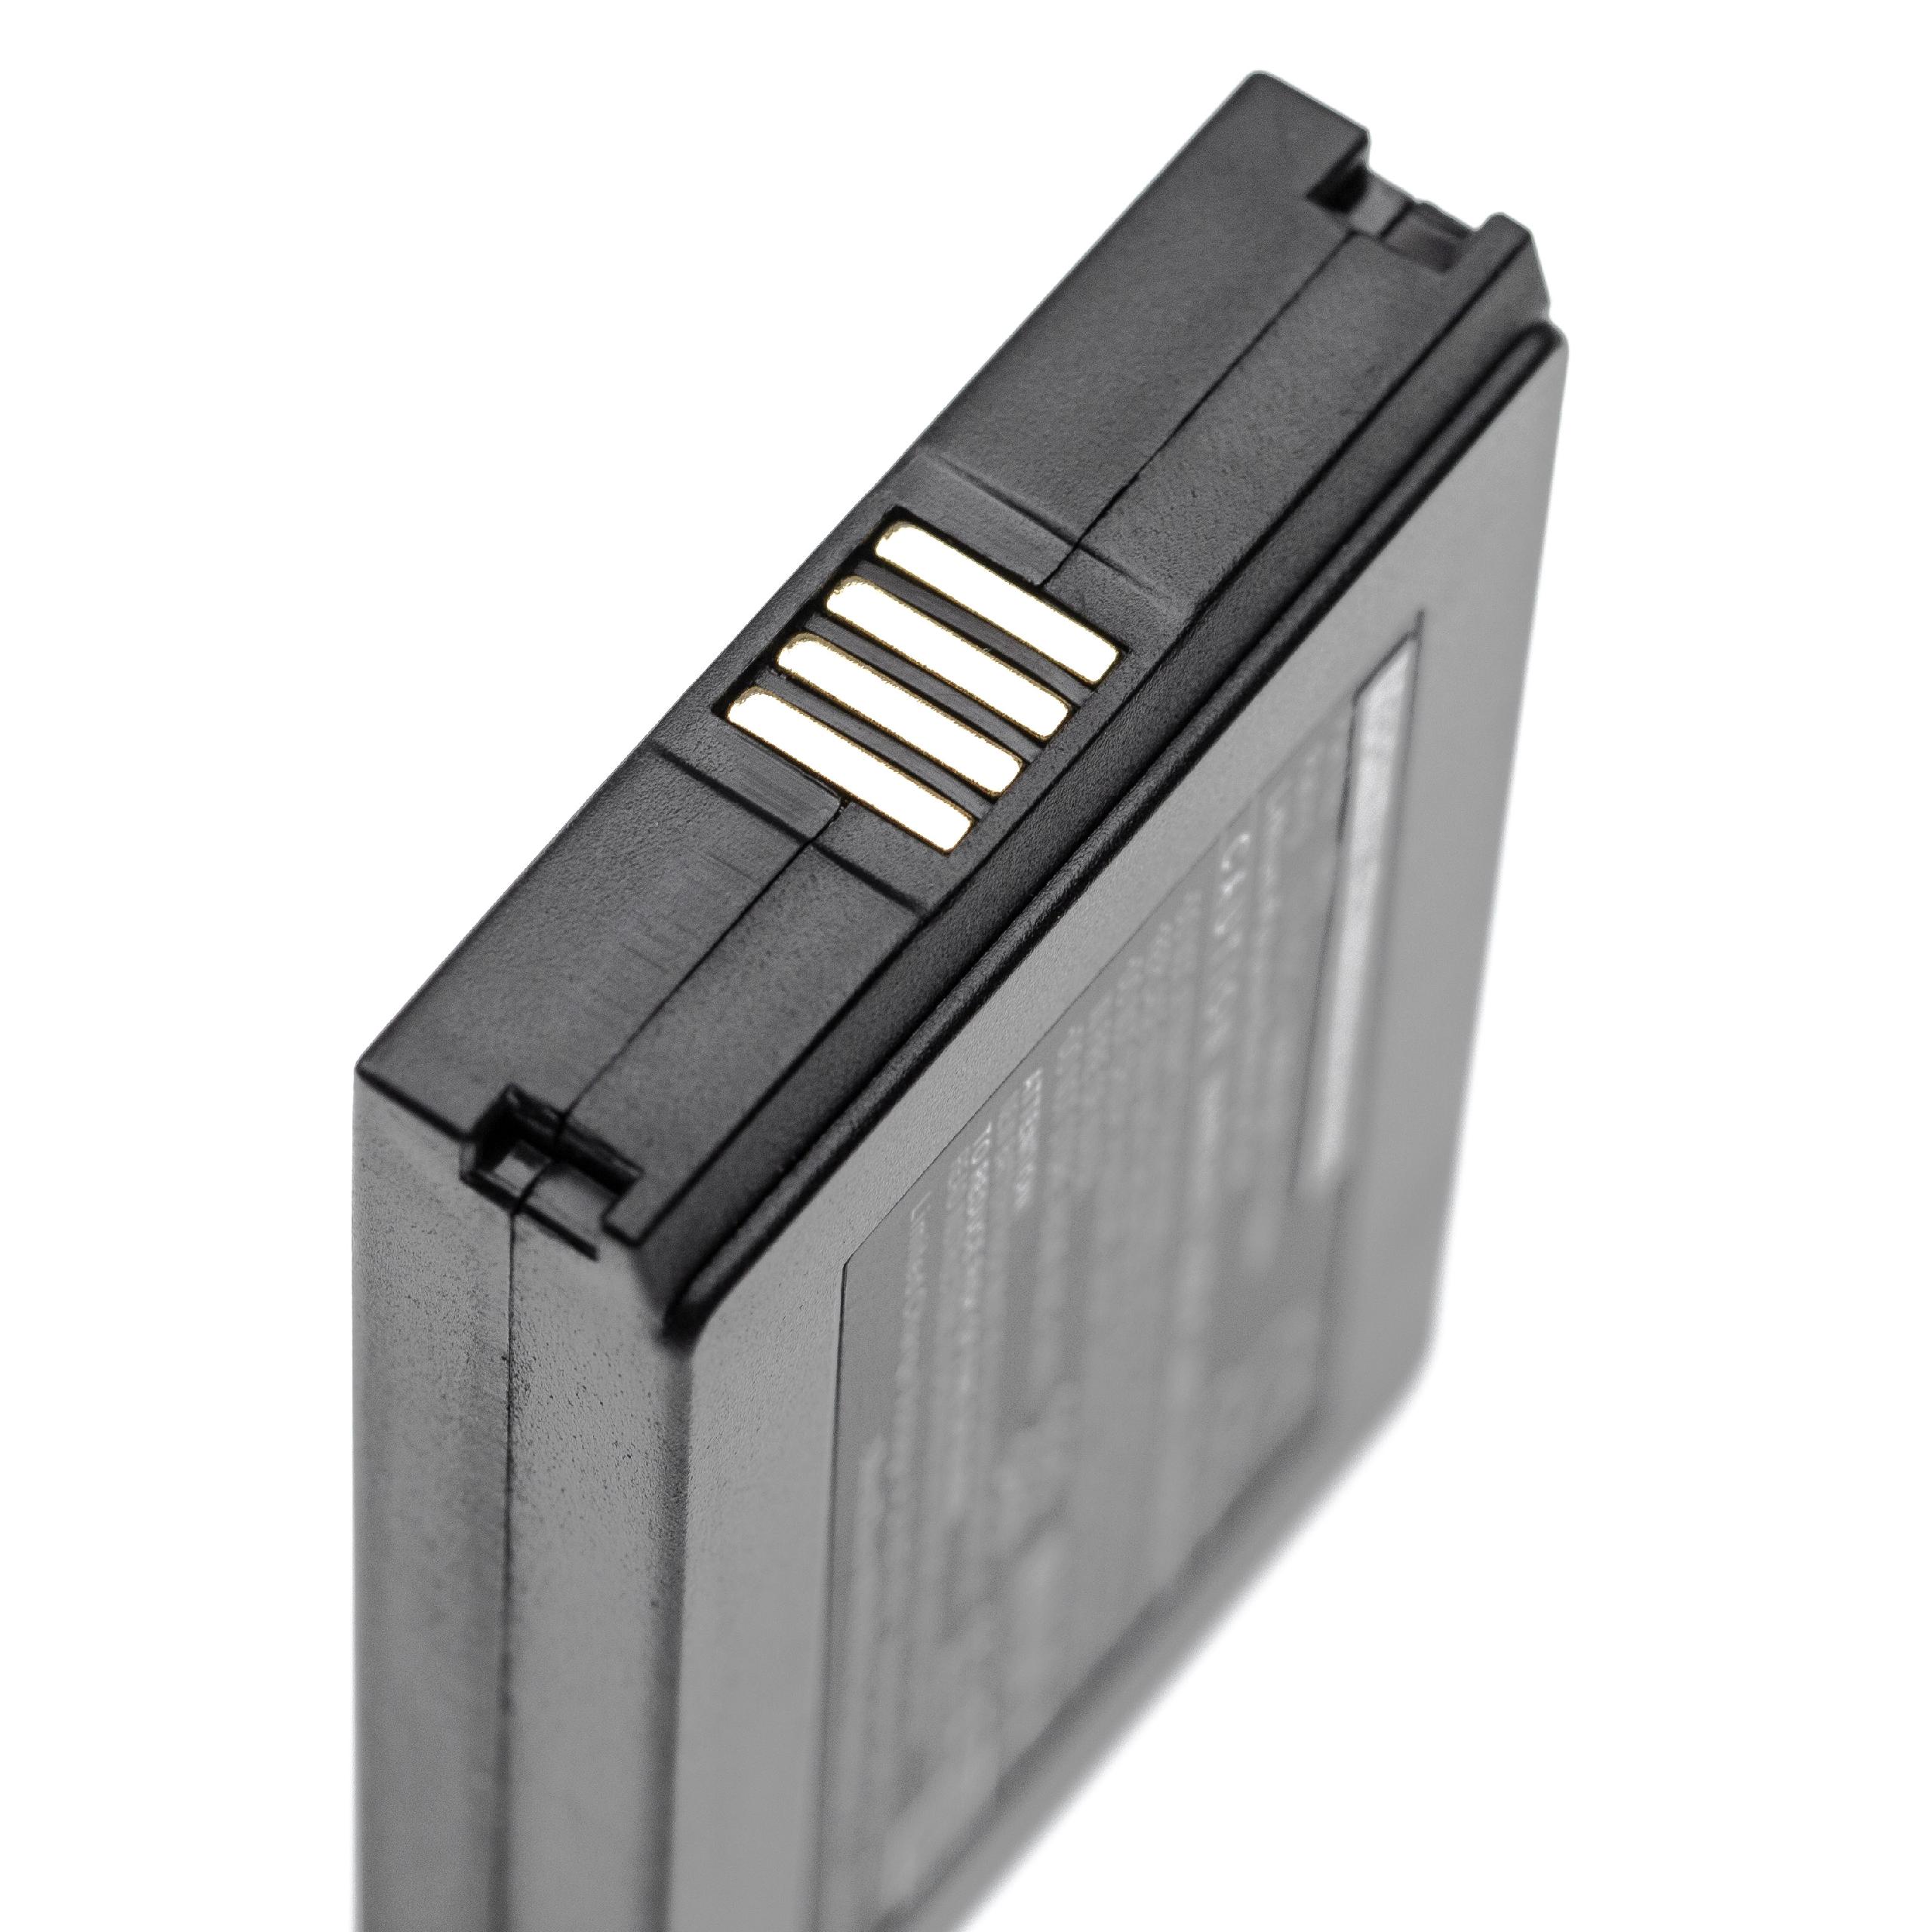 Batería reemplaza Vectron B60 para escáner de código de barras Vectron - 3000 mAh 3,7 V Li-poli